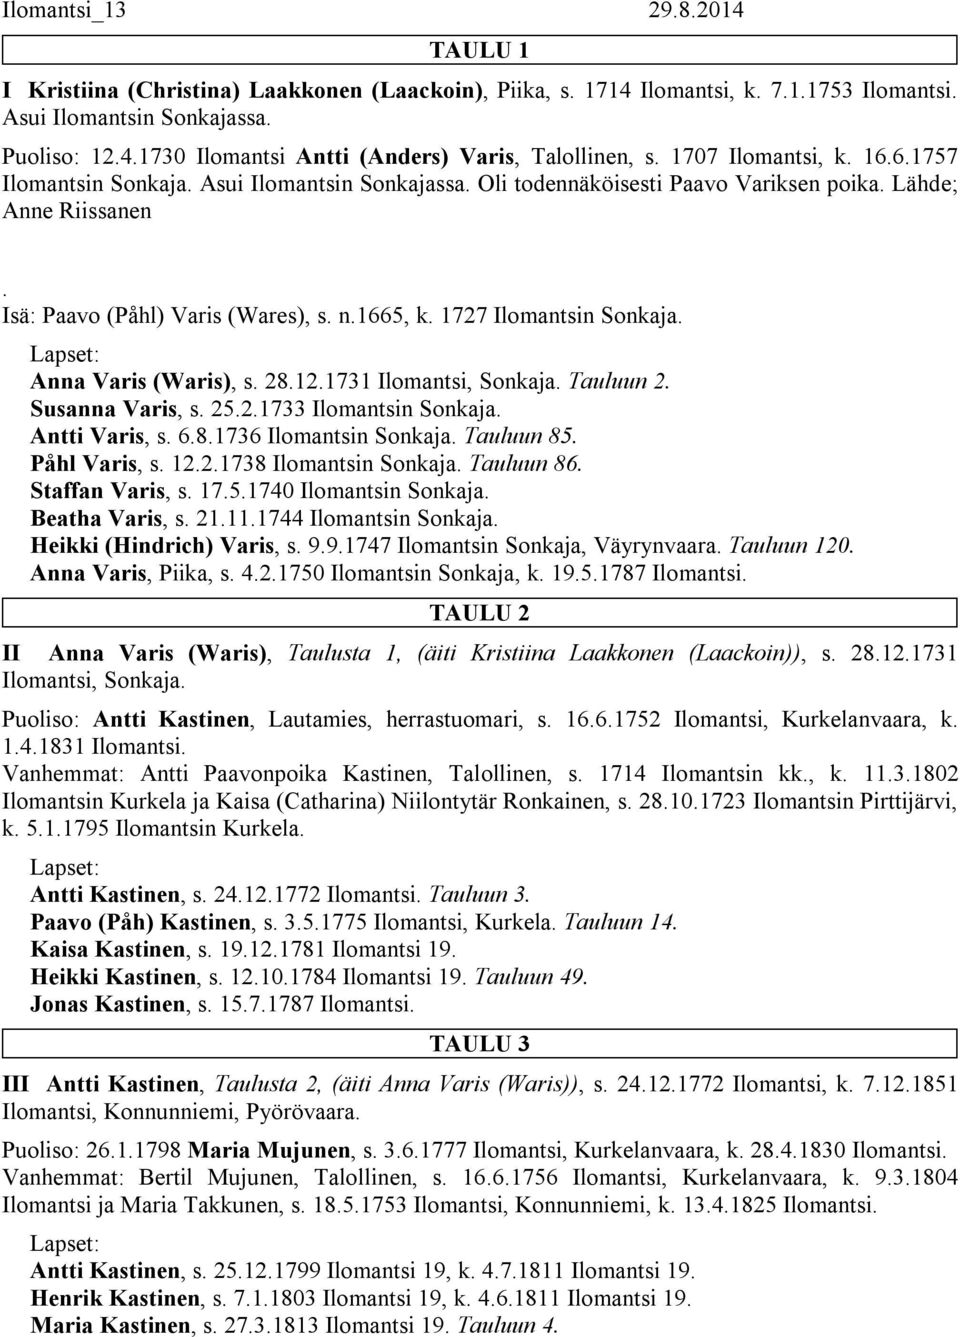 1727 Ilomantsin Sonkaja. Anna Varis (Waris), s. 28.12.1731 Ilomantsi, Sonkaja. Tauluun 2. Susanna Varis, s. 25.2.1733 Ilomantsin Sonkaja. Antti Varis, s. 6.8.1736 Ilomantsin Sonkaja. Tauluun 85.